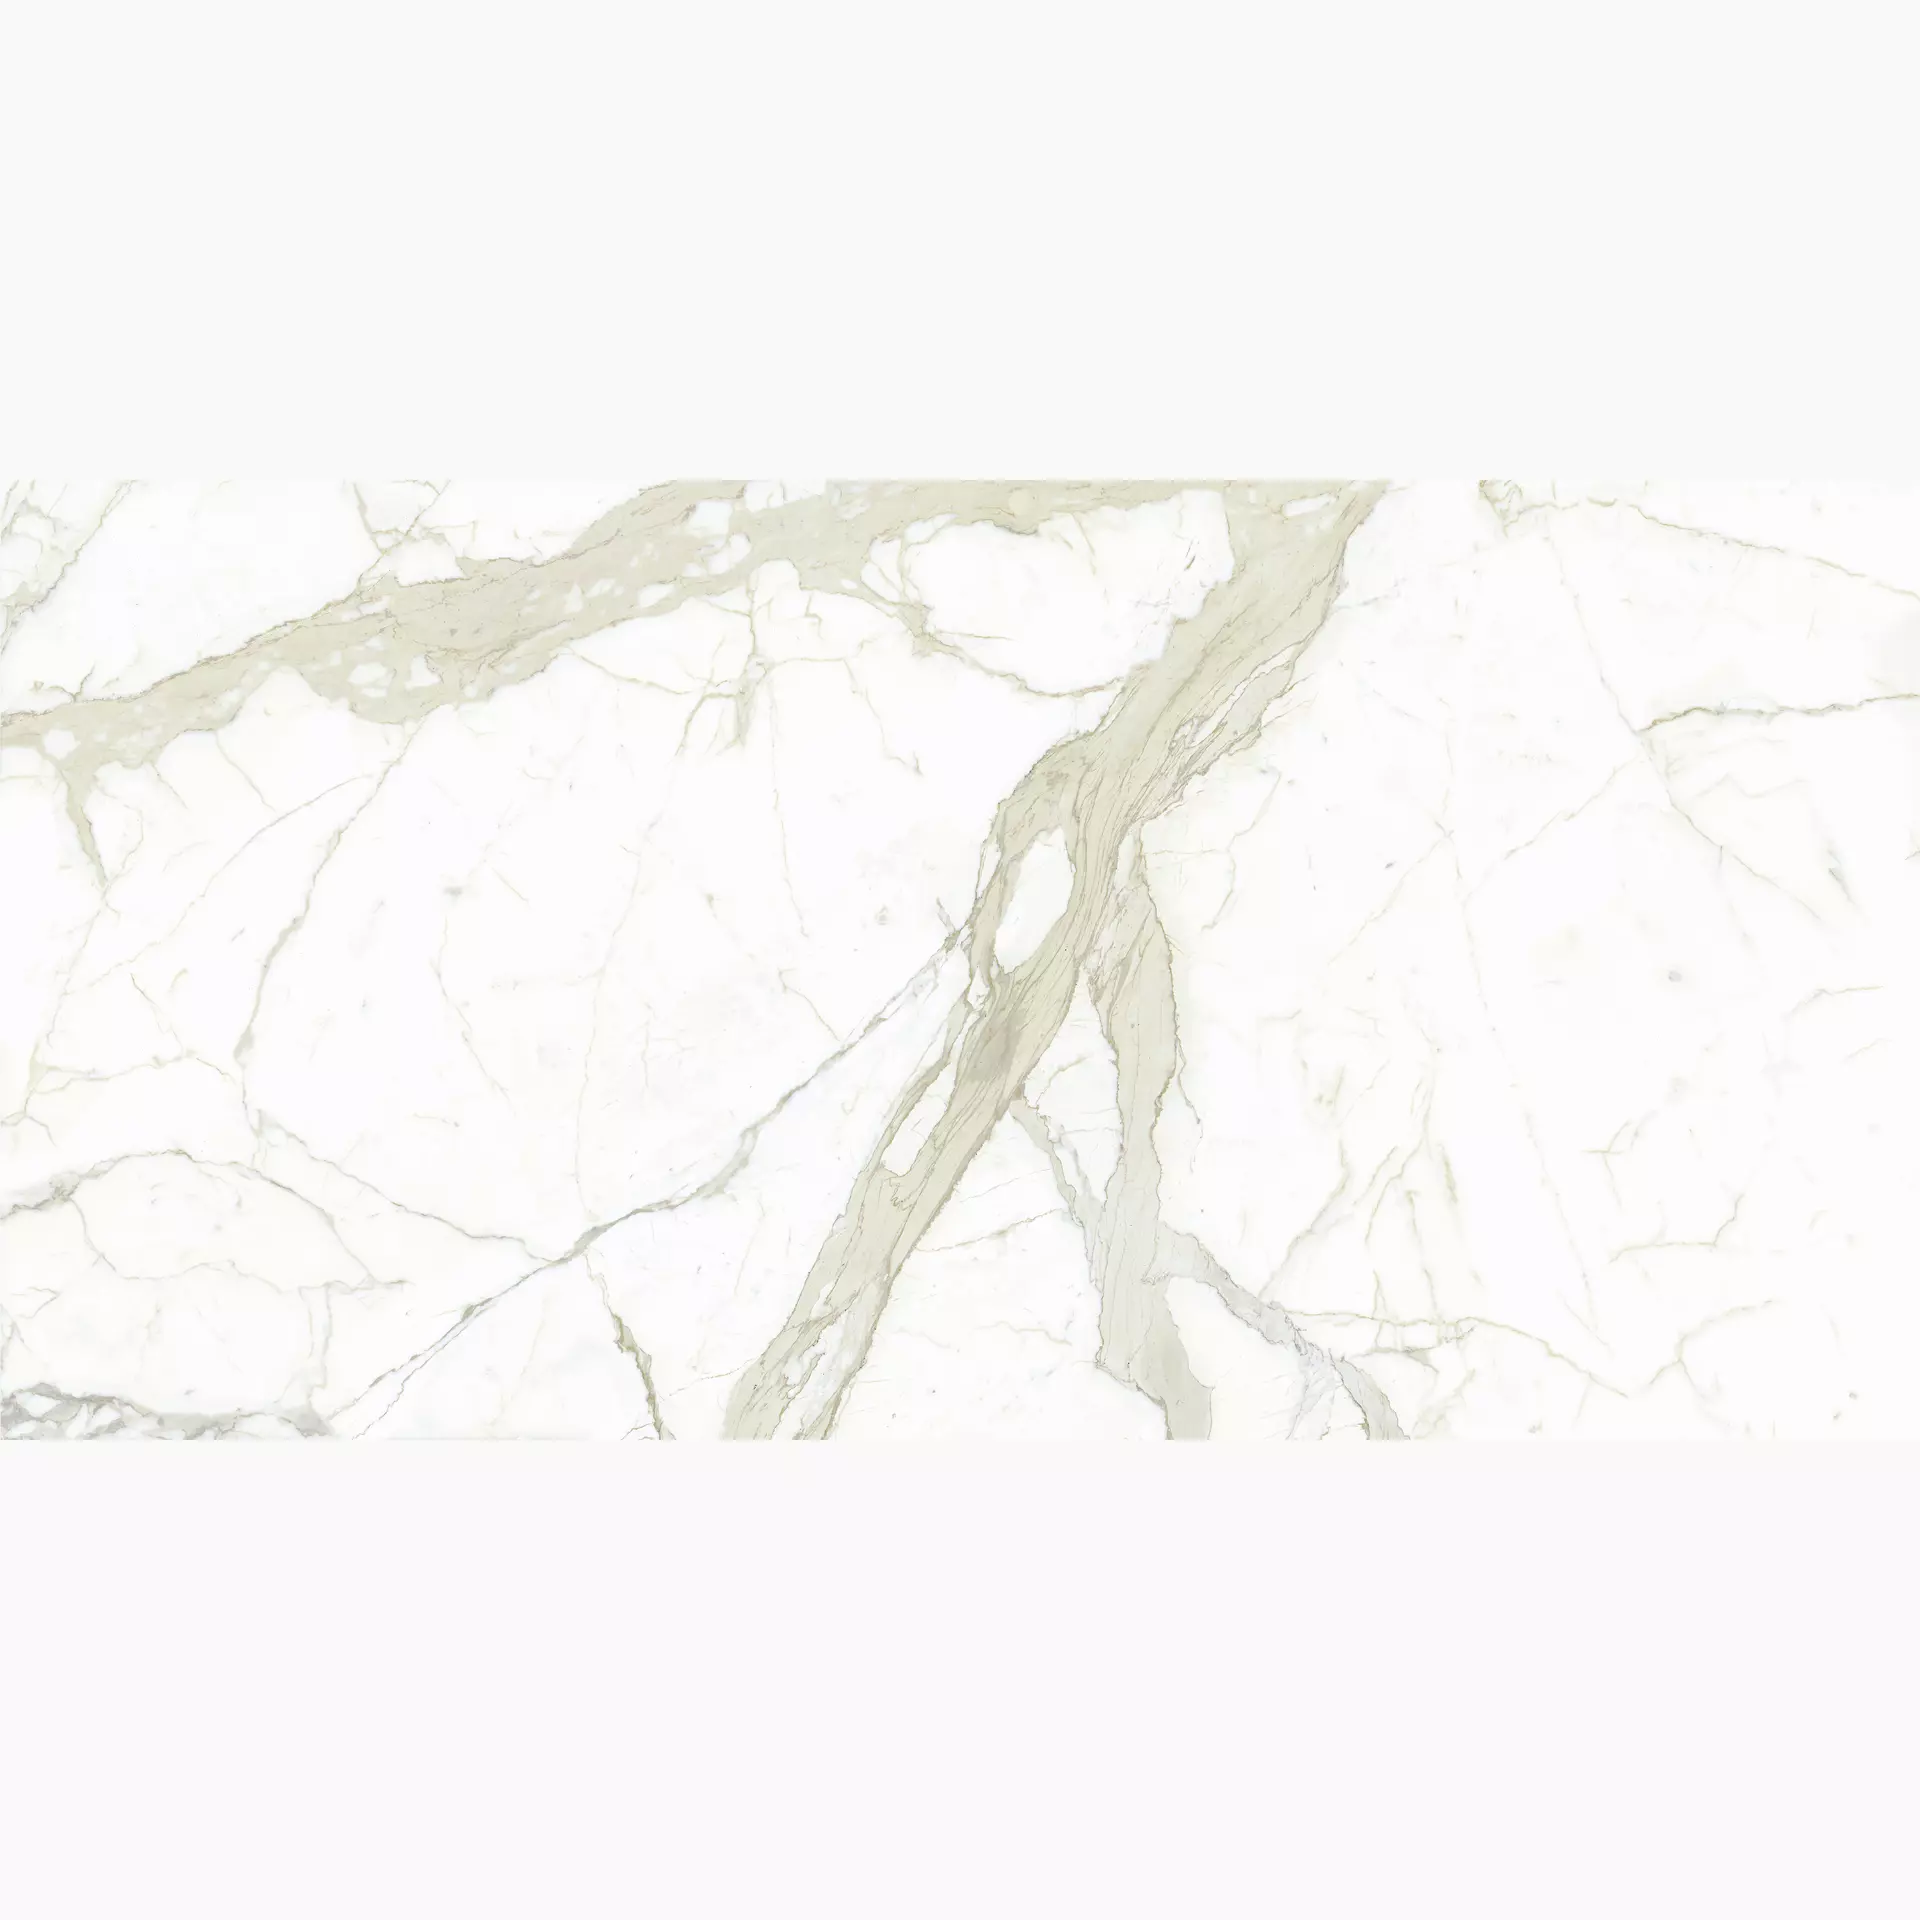 Maxfine Marmi White Calacatta Lucidato L315332MF6 150x300cm rectified 6mm